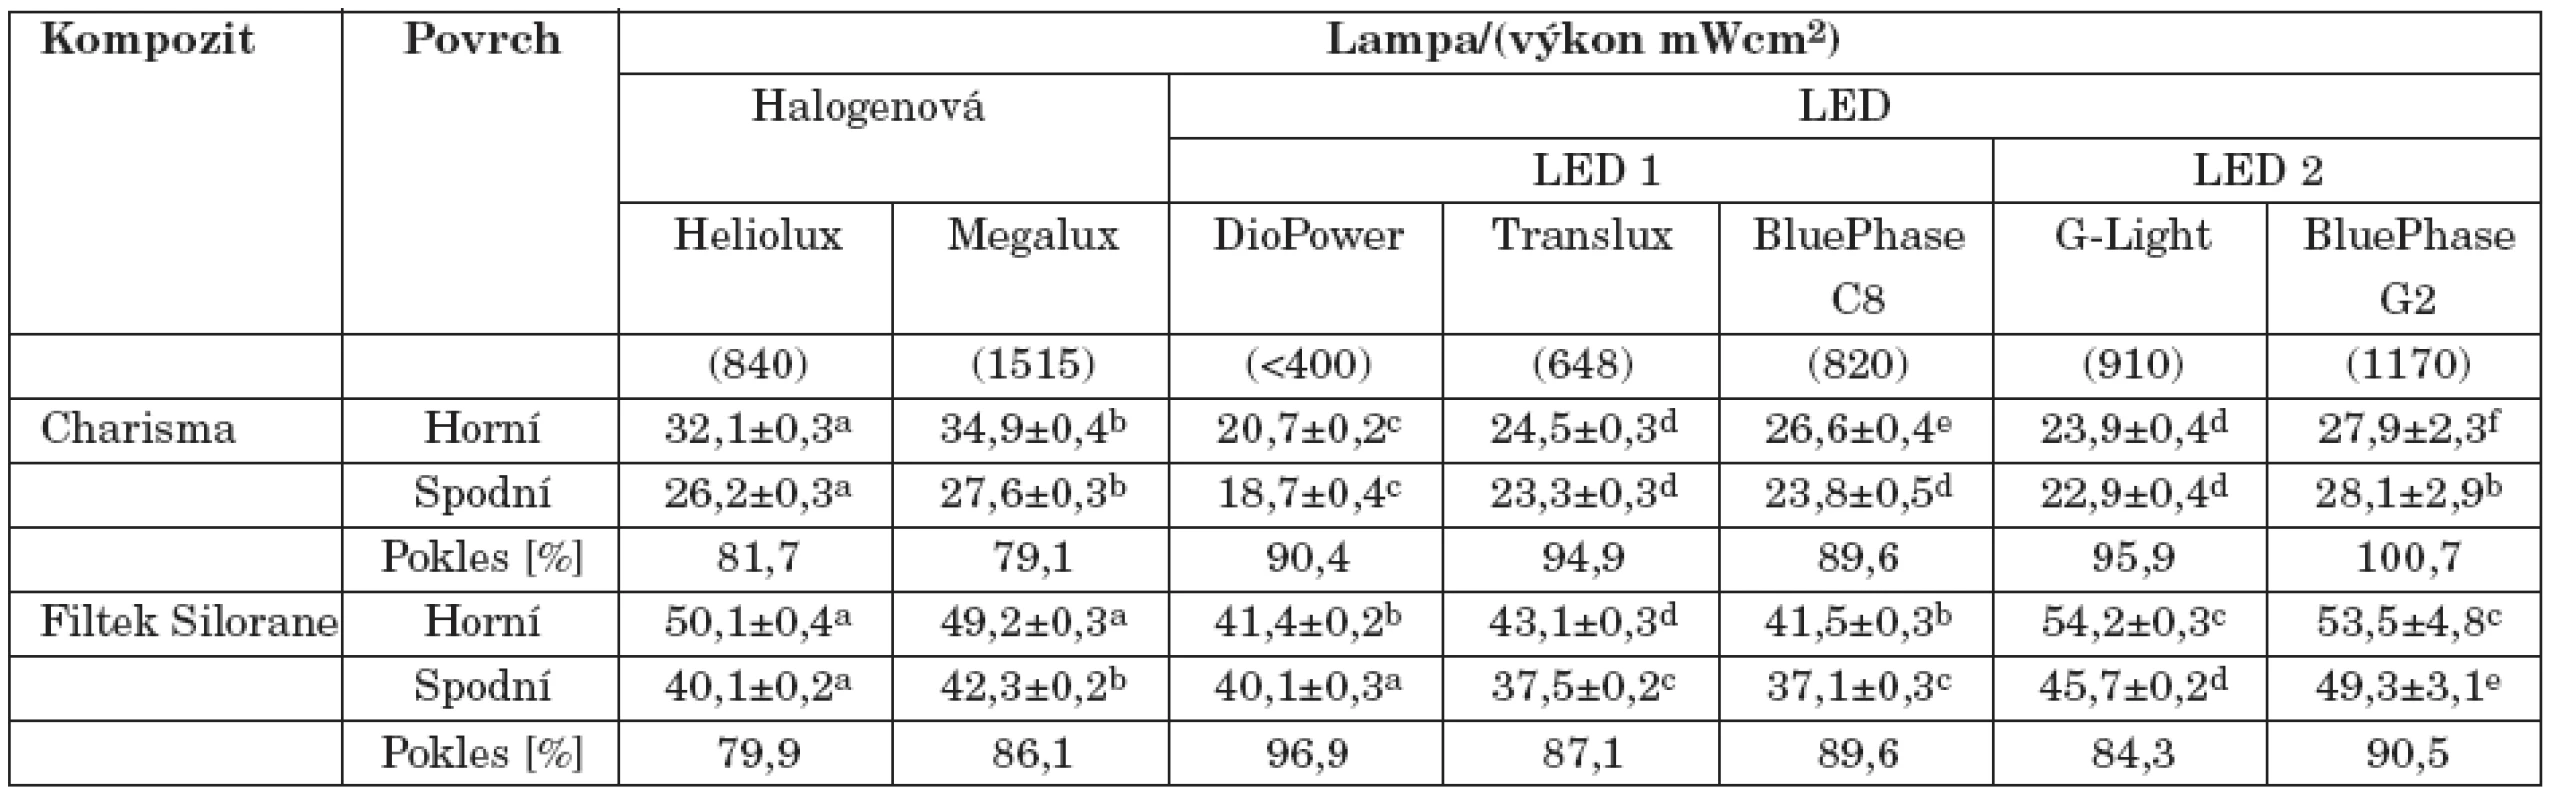 Vliv typu polymerační lampy na tvrdost (průměr ± SD kompozitních materiálů. Rozdílná písmena v řádcích indikují signifikantní rozdíly, v závorkách jsou uvedeny hodnoty výkonu [mW/cm&lt;sup&gt;2&lt;/sup&gt;].